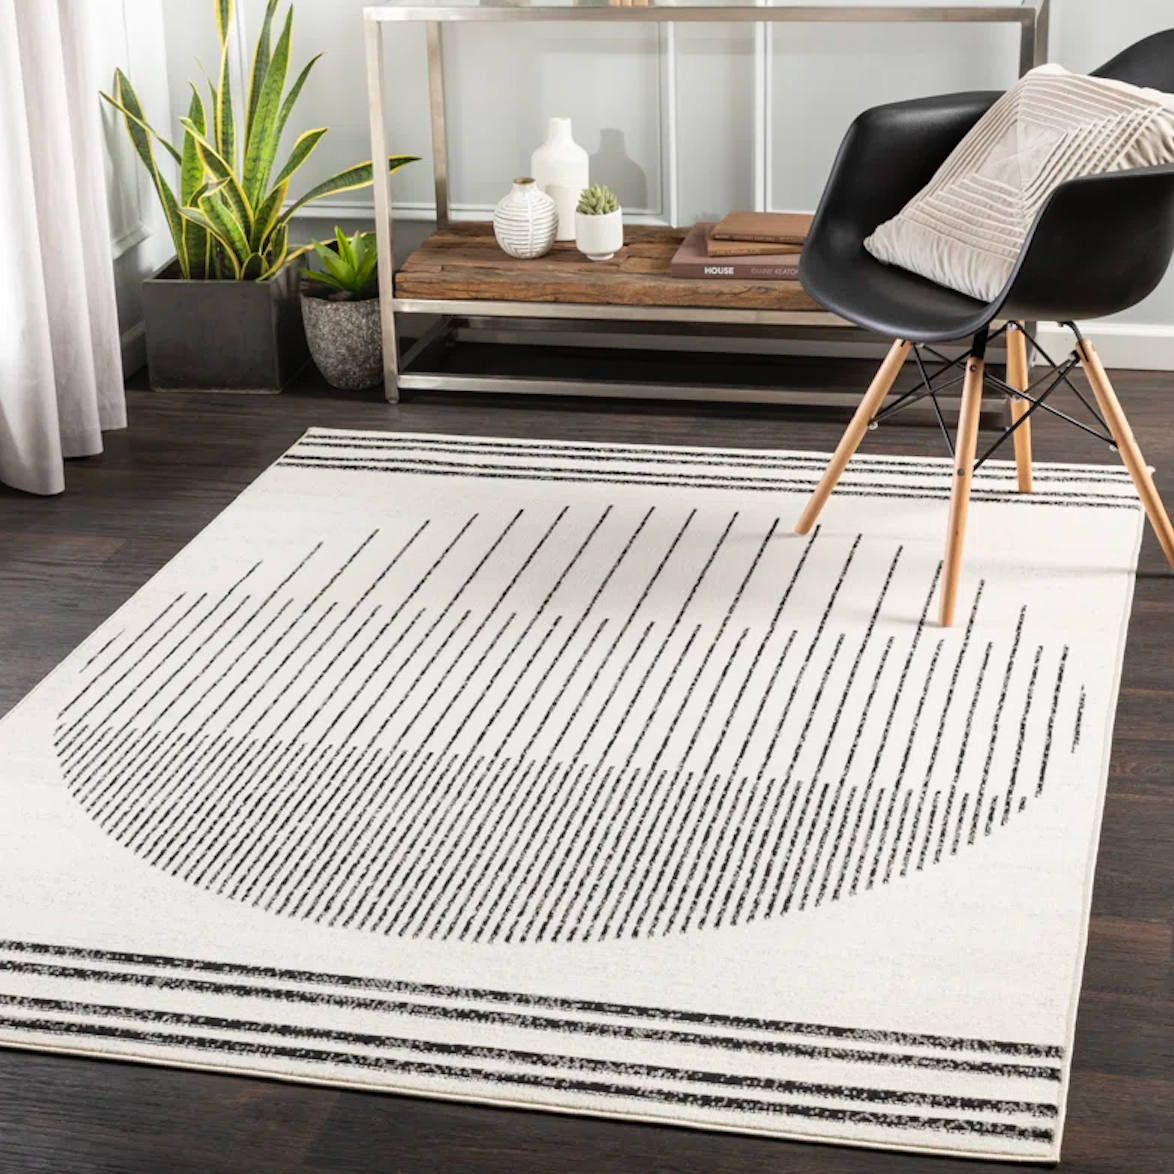 Trent austin design corum performance rug